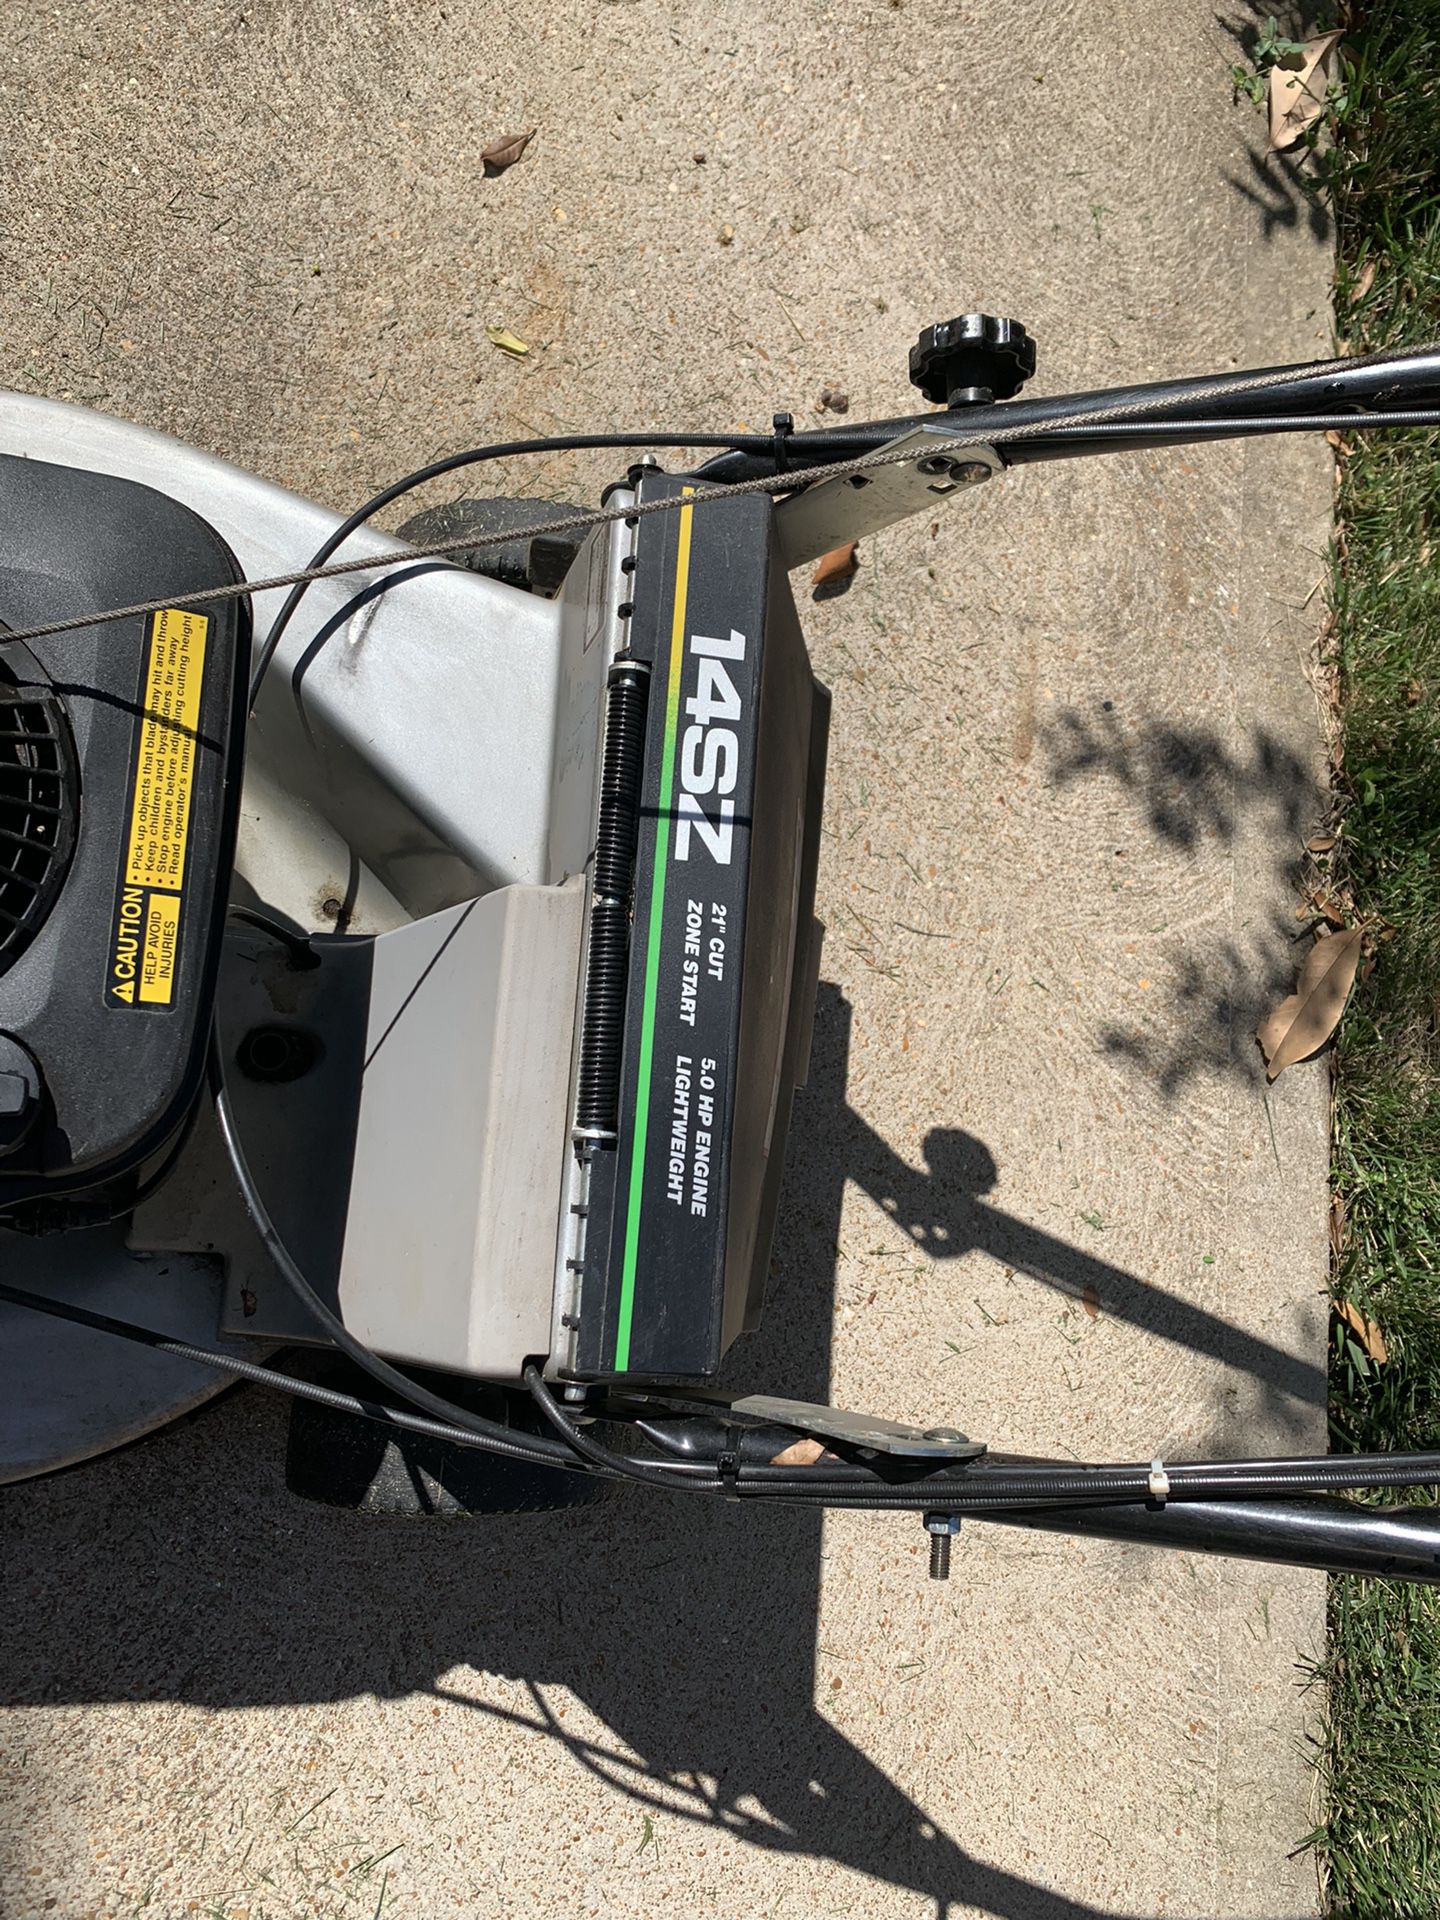 John Deere 14SZ Self-propelled Lawn Mower 21” Wide Cut